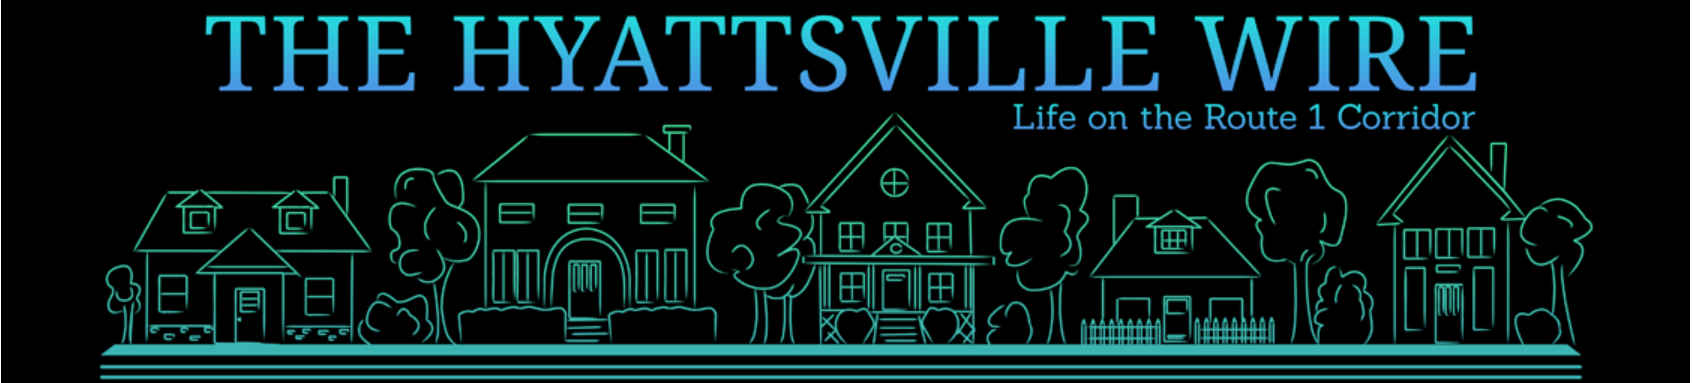 Hyattsville Wire logo